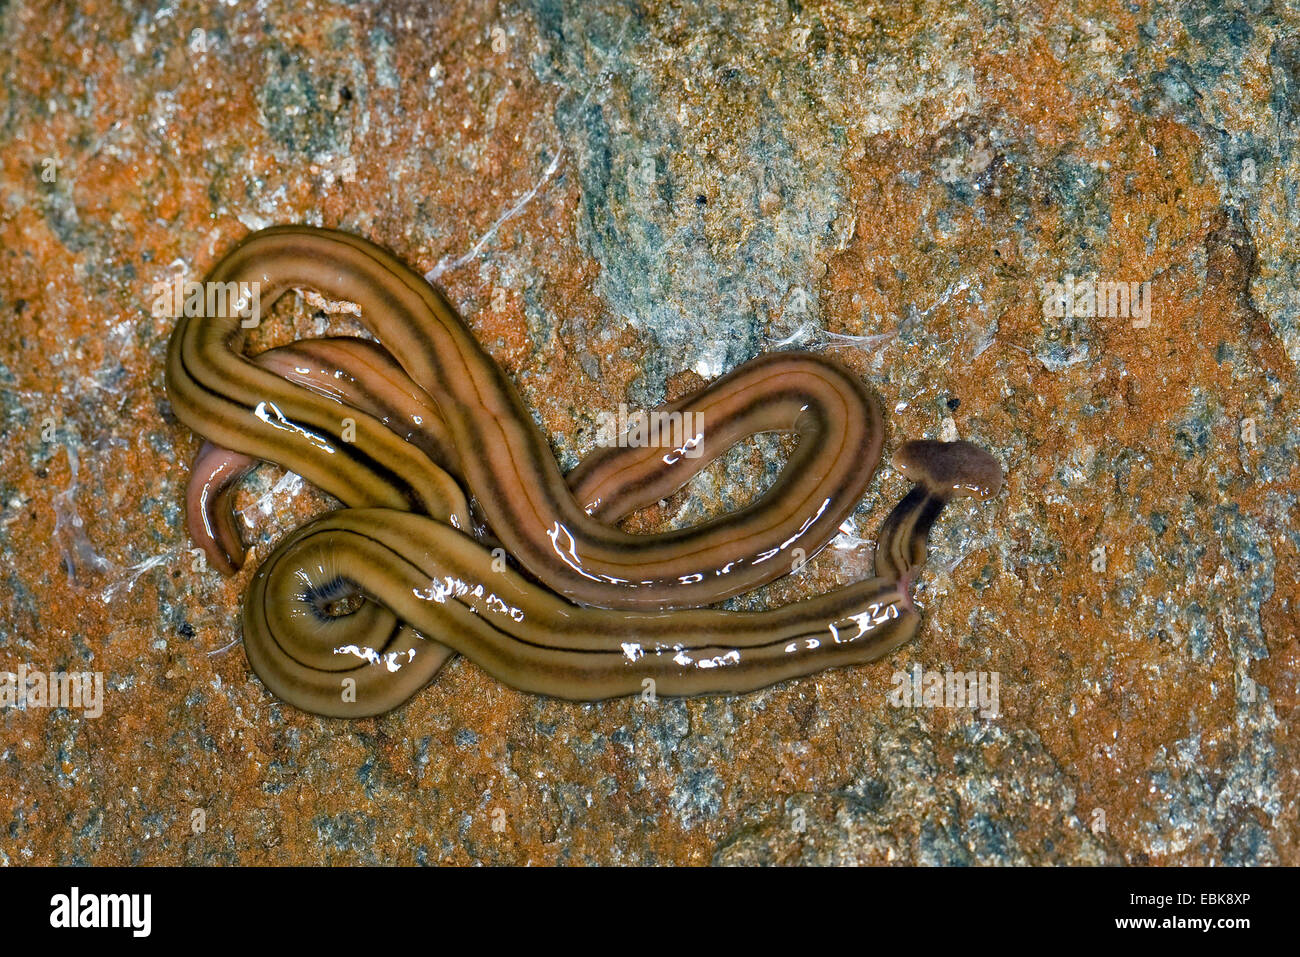 Shovel-headed Garden Worm, Shovel-headed Garden Flatworm, hammerhead worm, broadhead planarian (Bipalium kewense, Placocephalus kewensis, Sphyrocephalus kewense), Germany Stock Photo